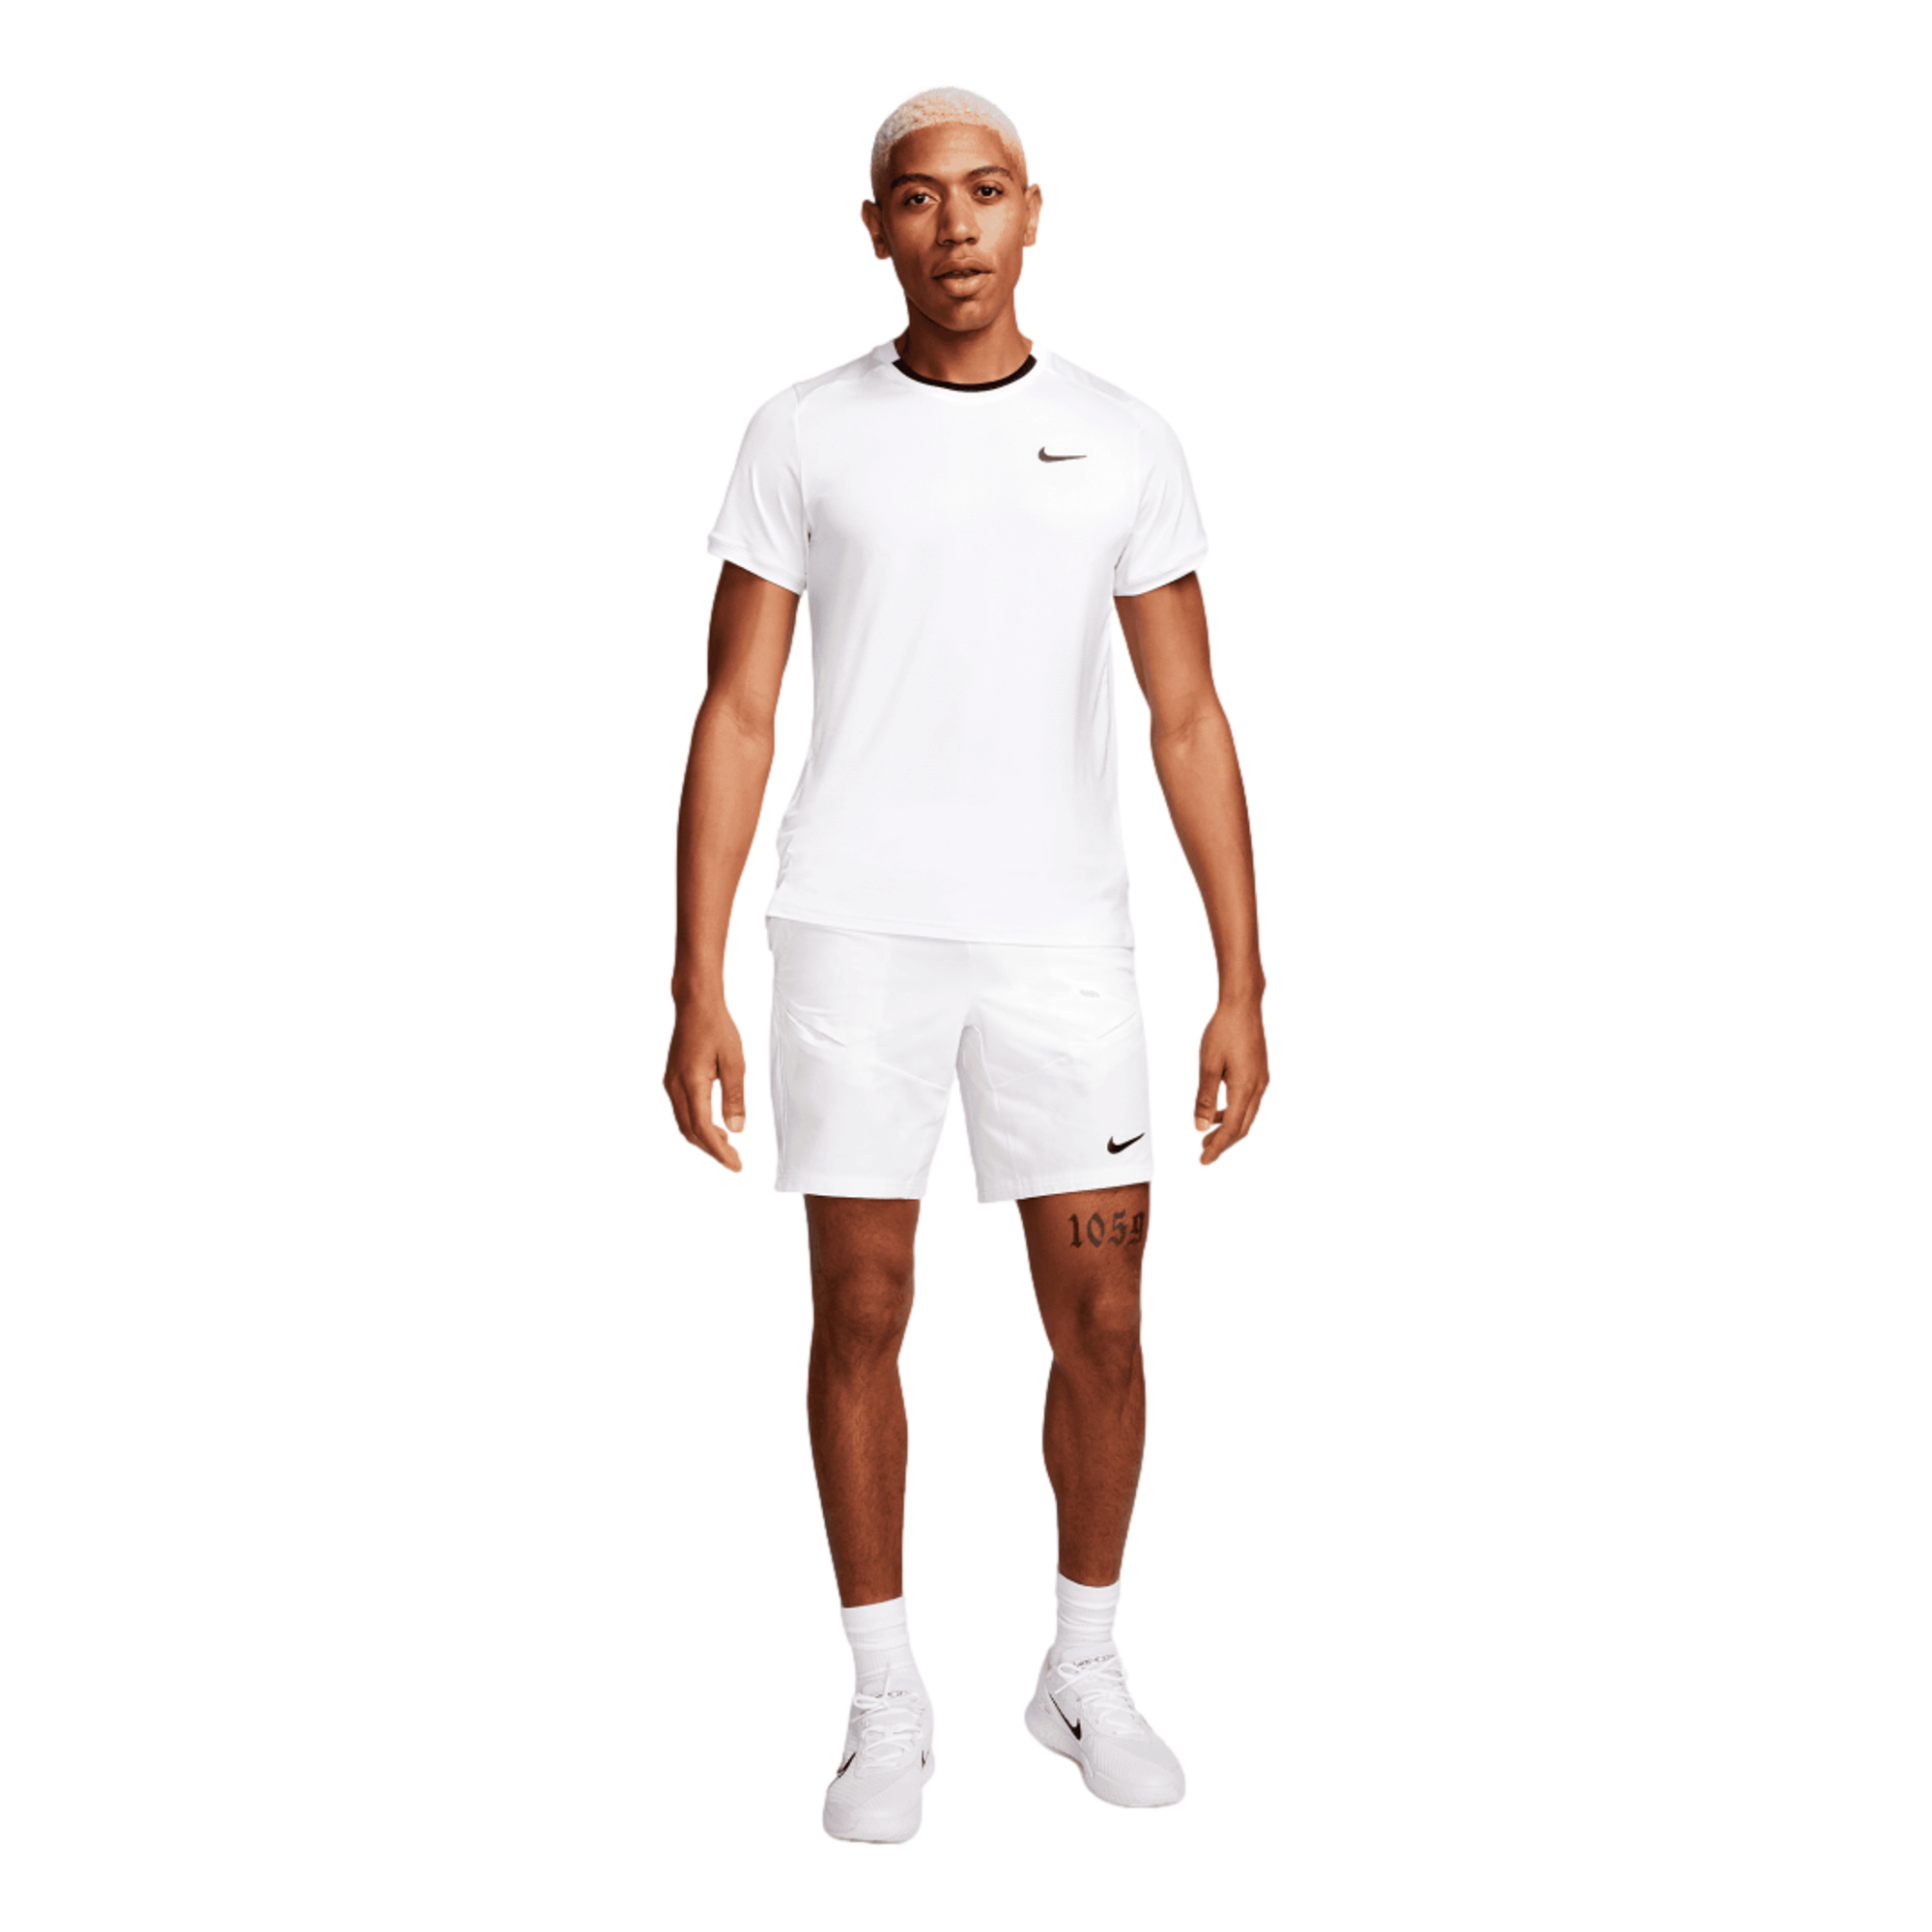 NikeCourt Advantage Dri-FIT Colorblock Men's Tennis Shirt